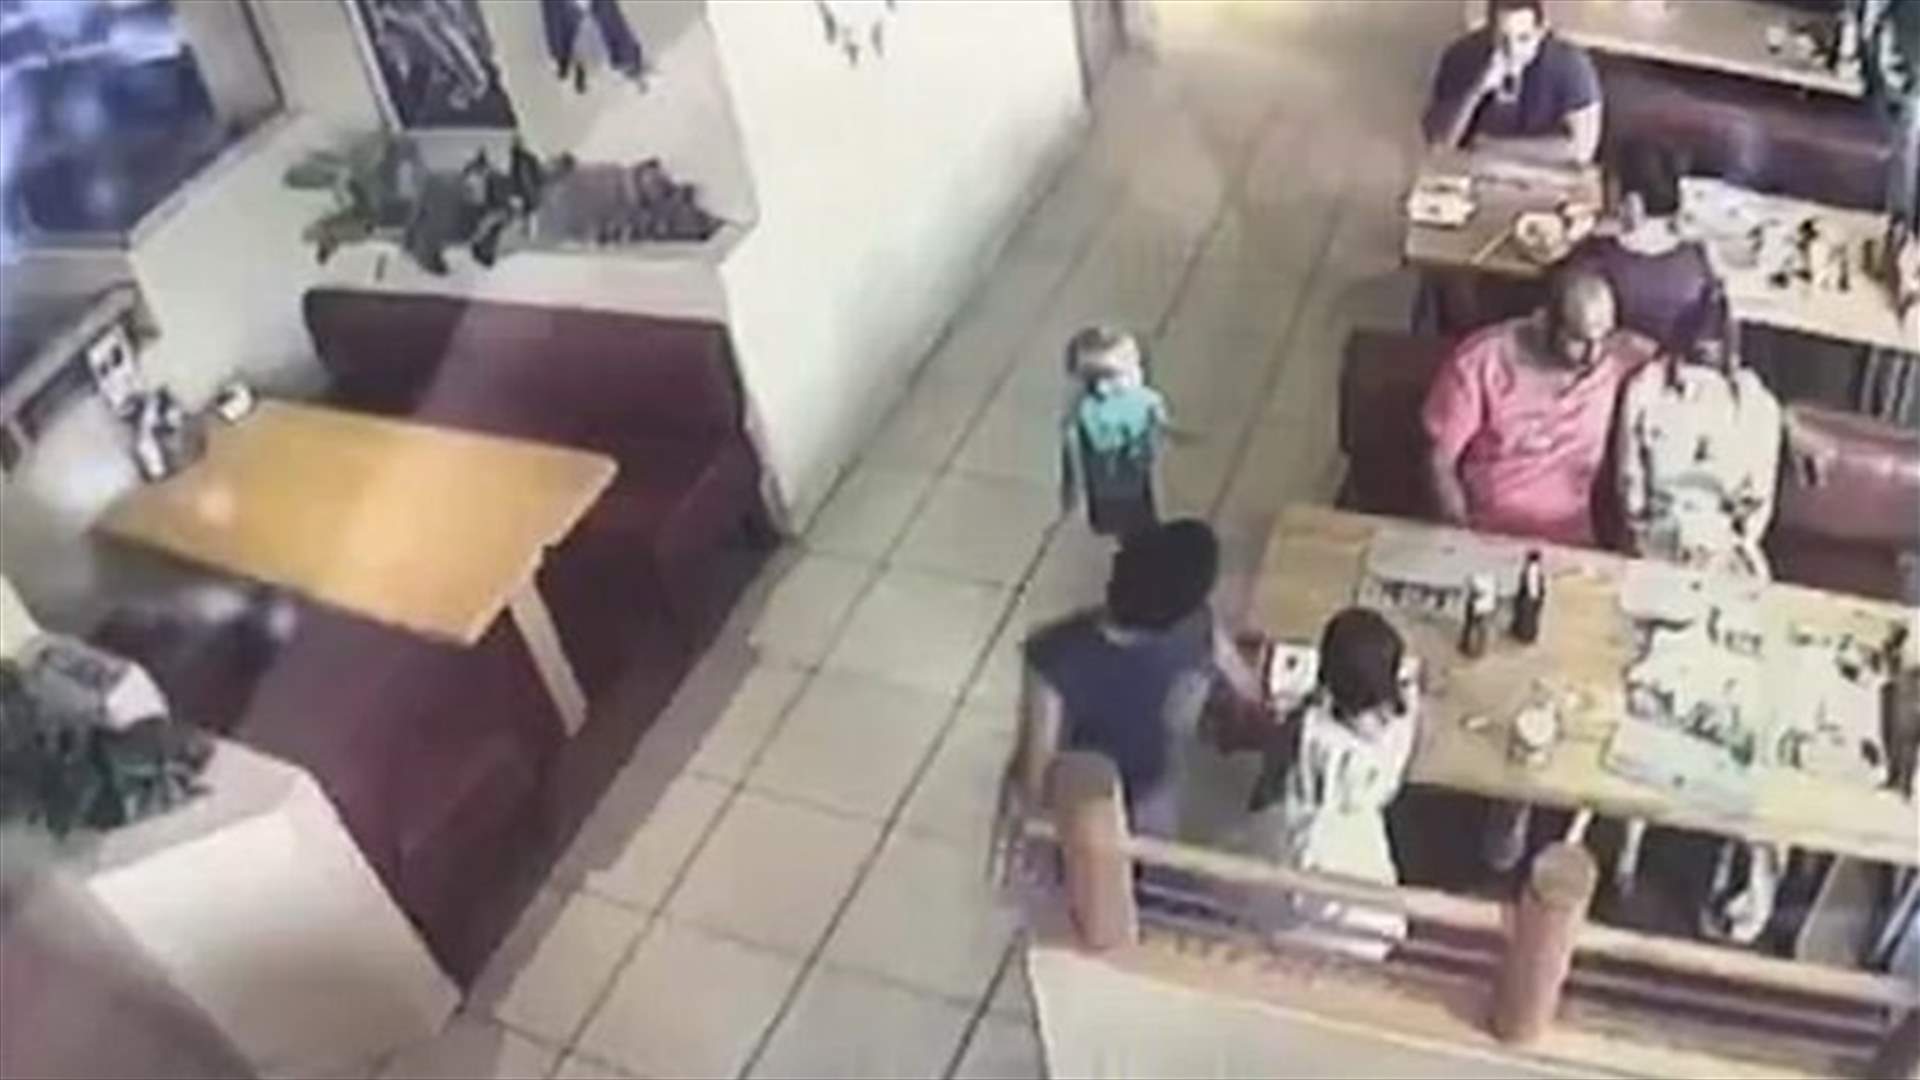 بالفيديو- هكذا حاول اختطاف طفل في المطعم... على بعد أمتار من والديه!